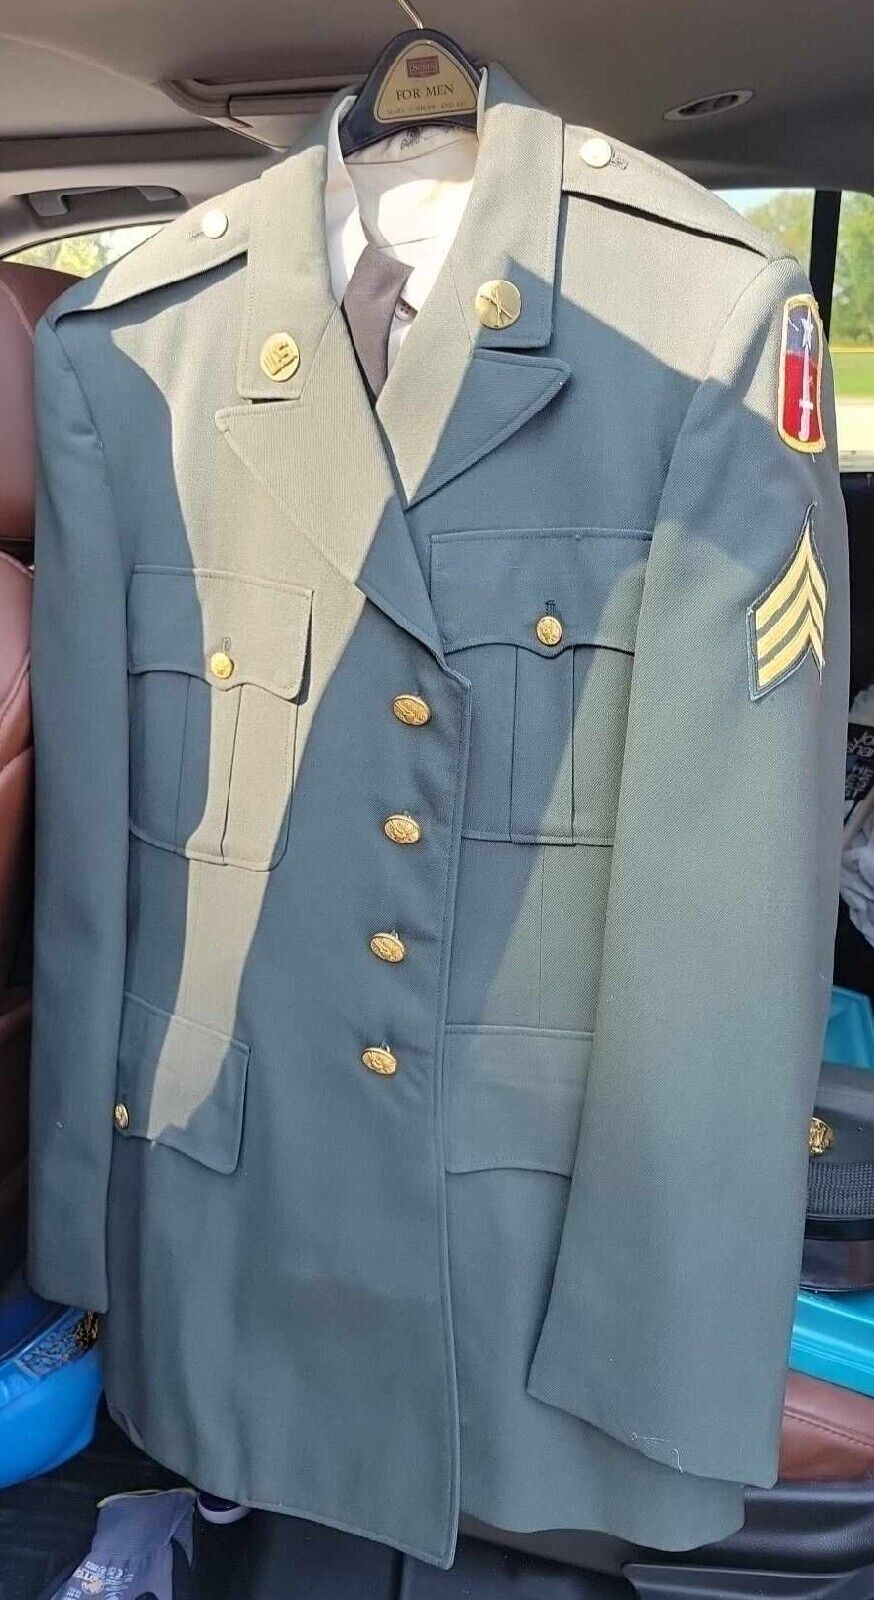 90’s Class A Army Uniform. SGT/E5 stripes, infantry collar insignia